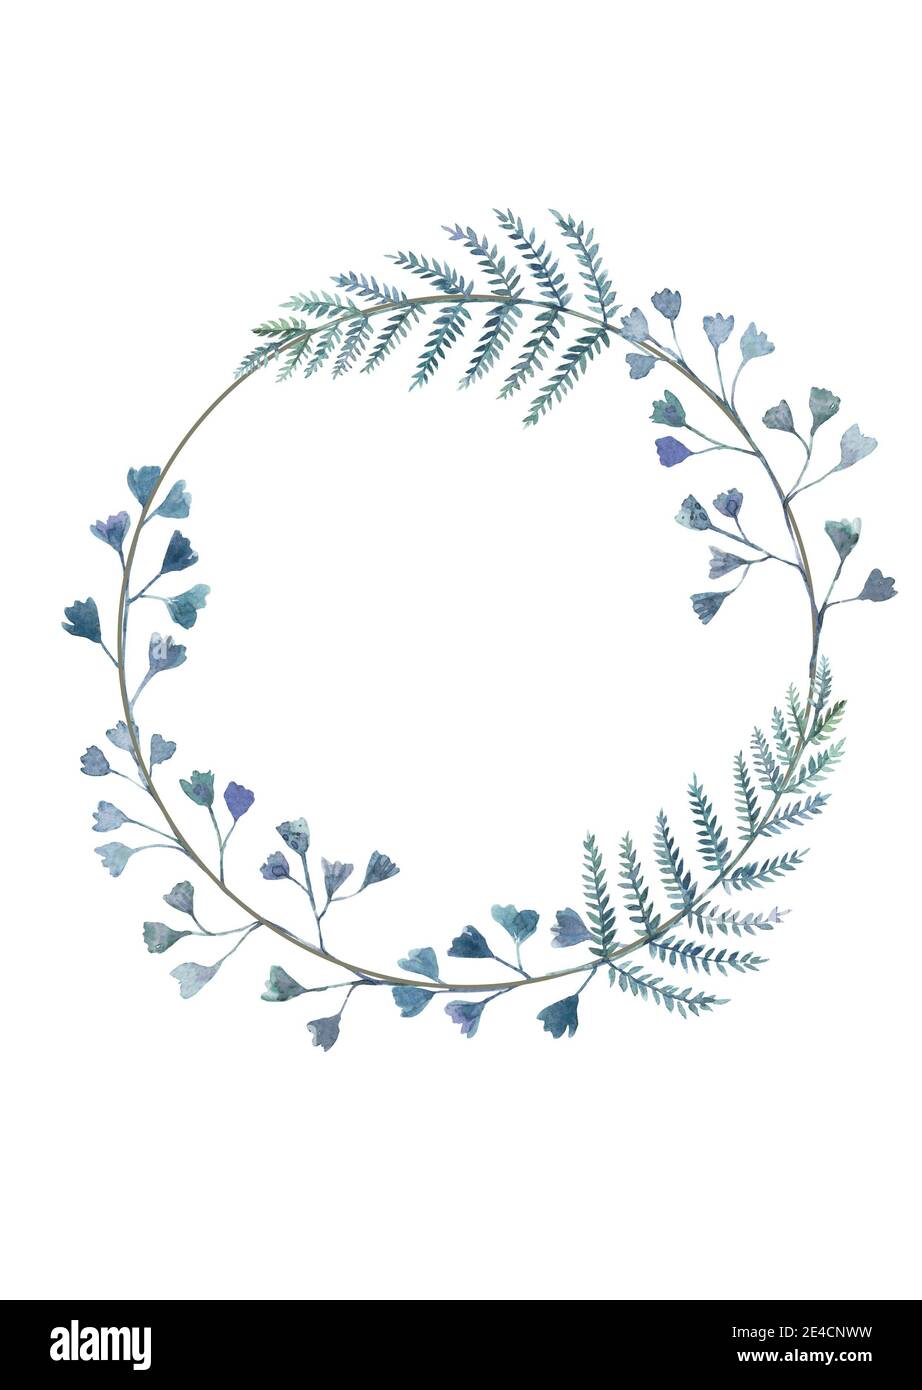 fern wreath clipart vector